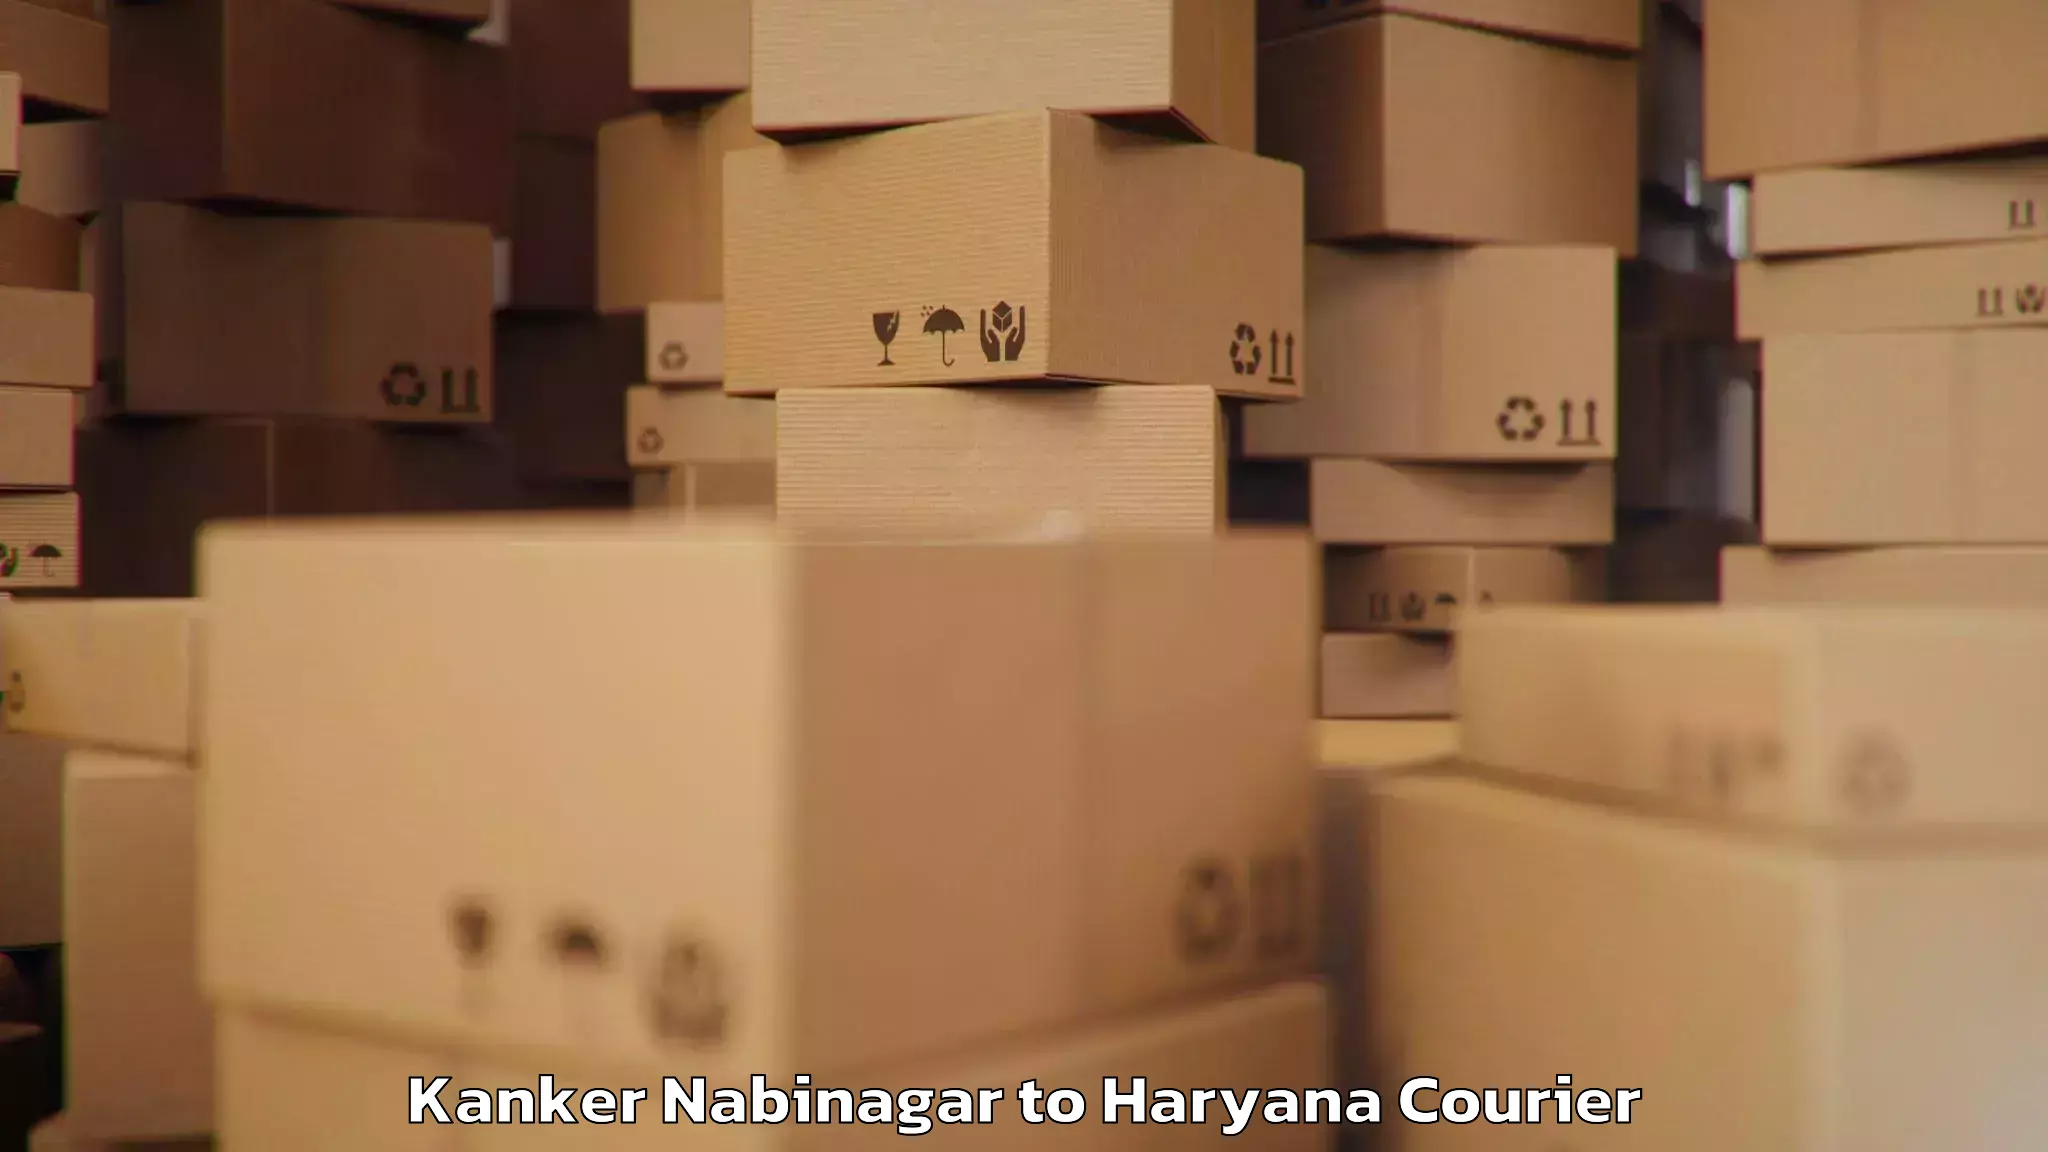 Baggage courier pricing Kanker Nabinagar to Odhan